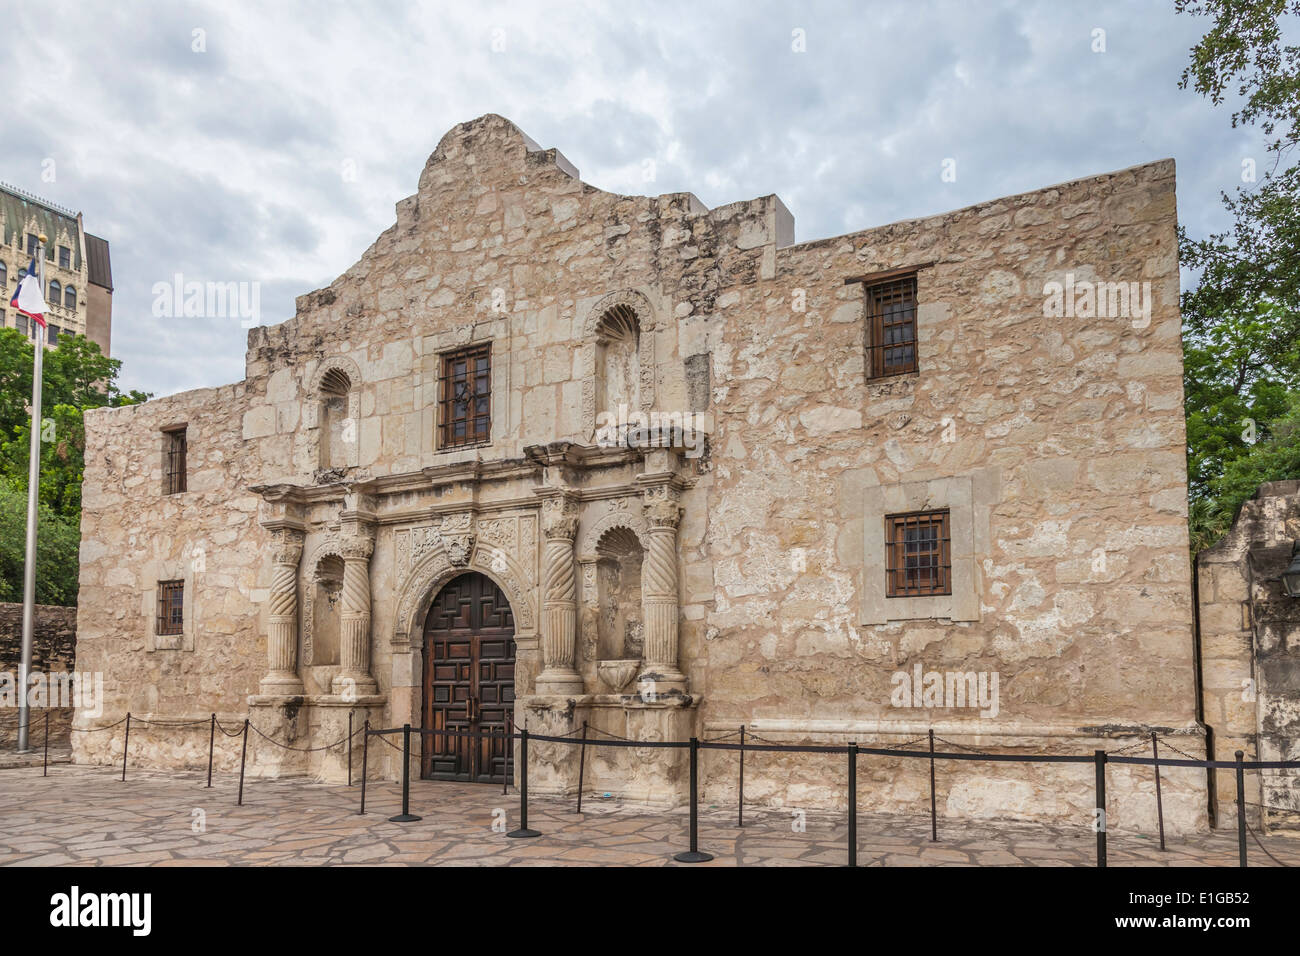 The Alamo, Ort der berühmten Schlacht um Texas Unabhängigkeit von Mexiko, in der Innenstadt von San Antonio, Texas. Stockfoto